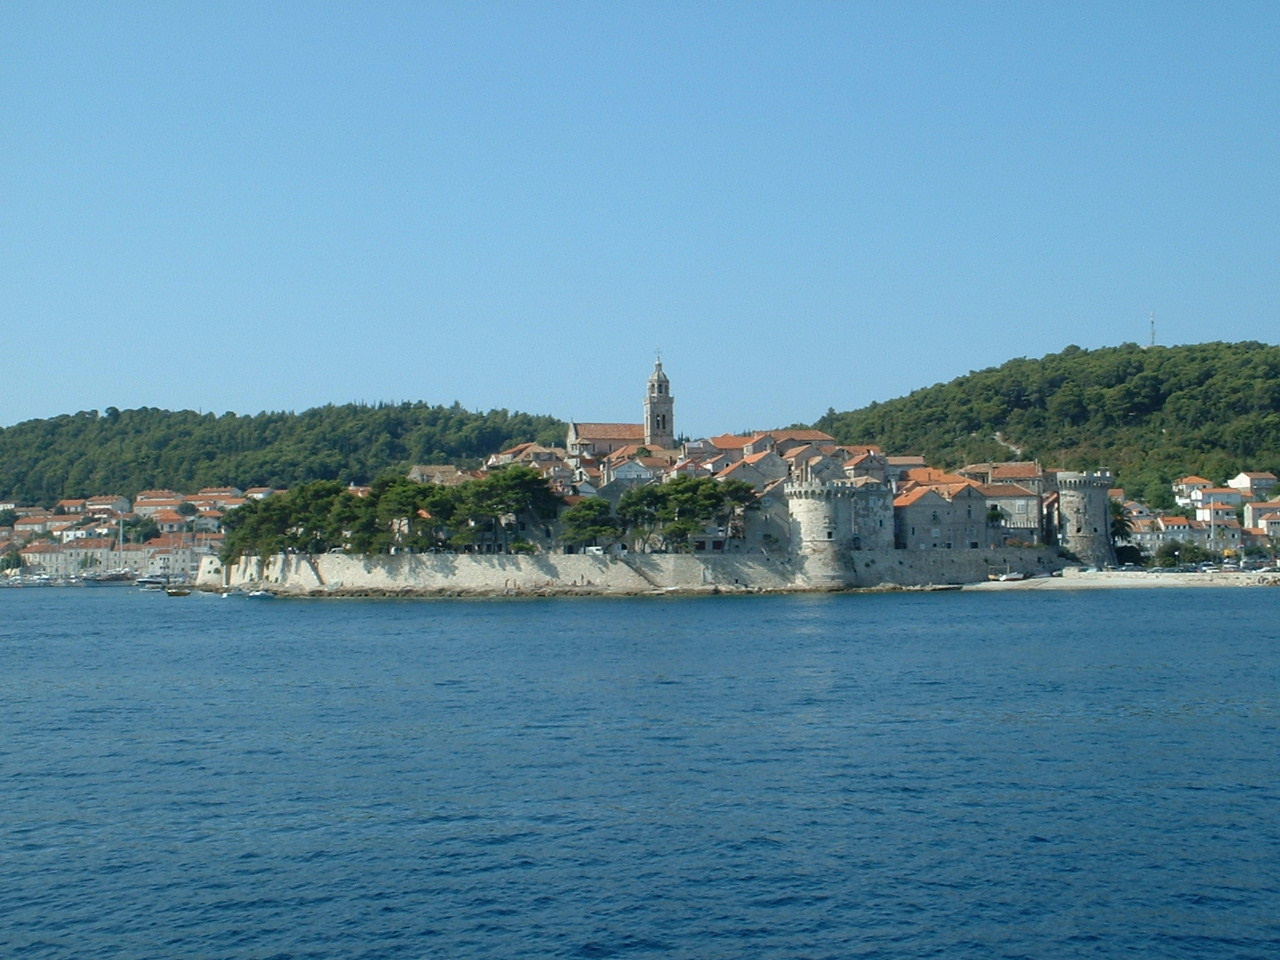 Wakacje w Chorwacji